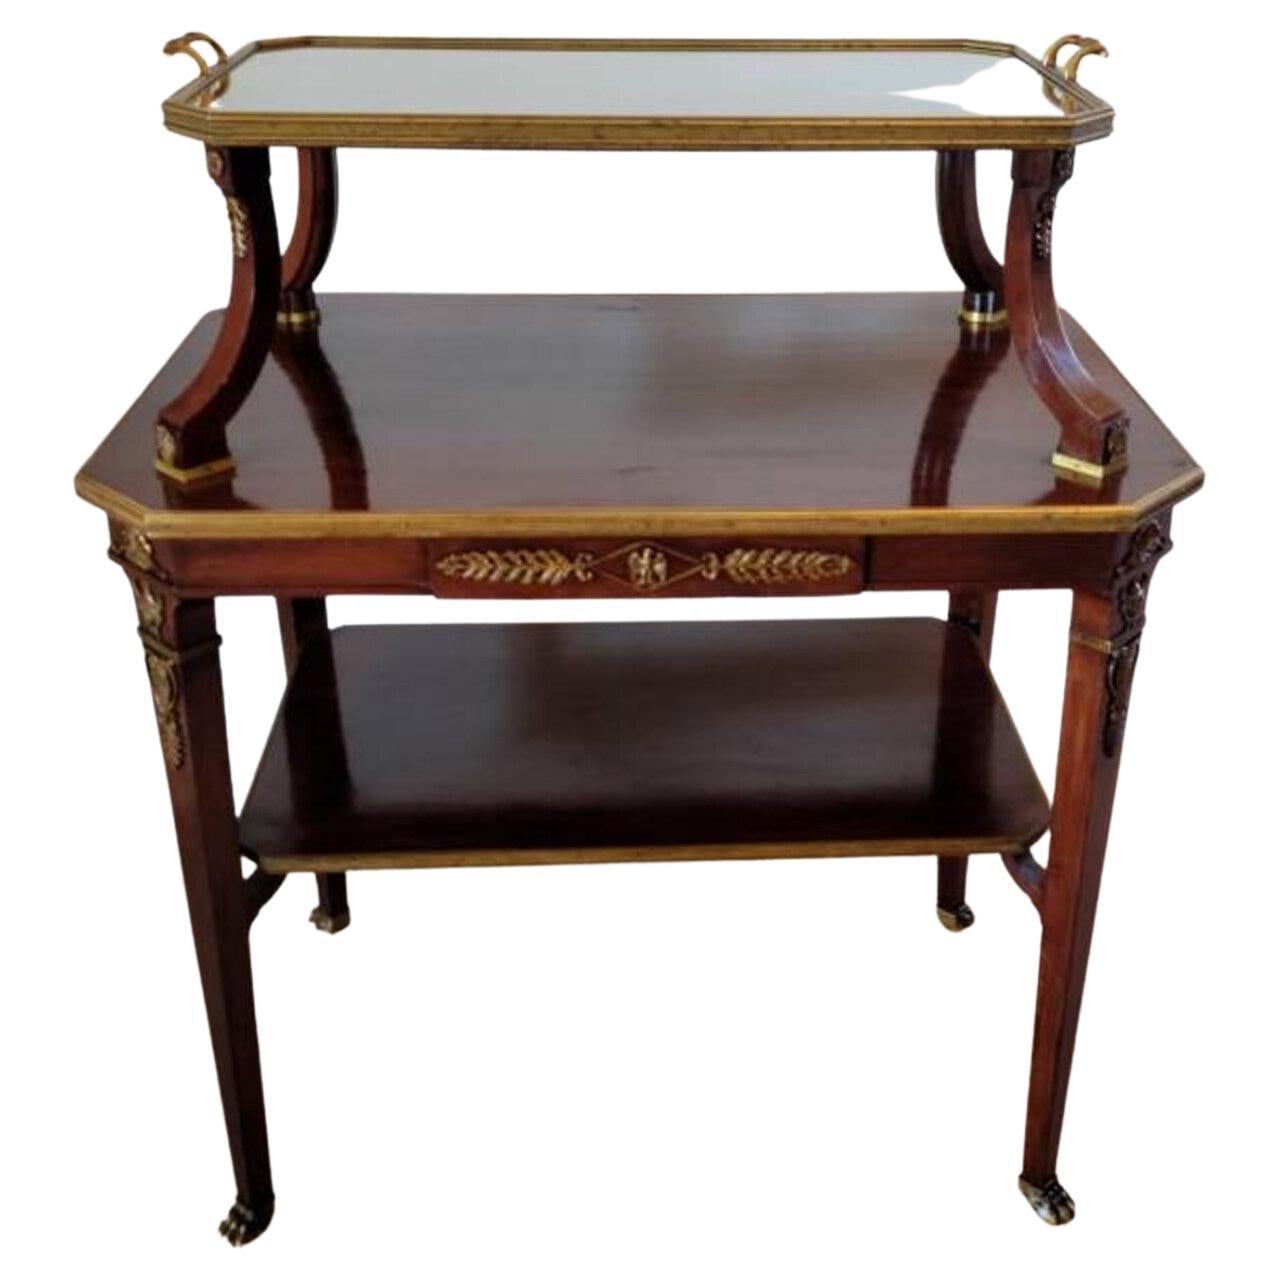 Ancienne table à thé à plateau à étages de style Empire français signée Krieger